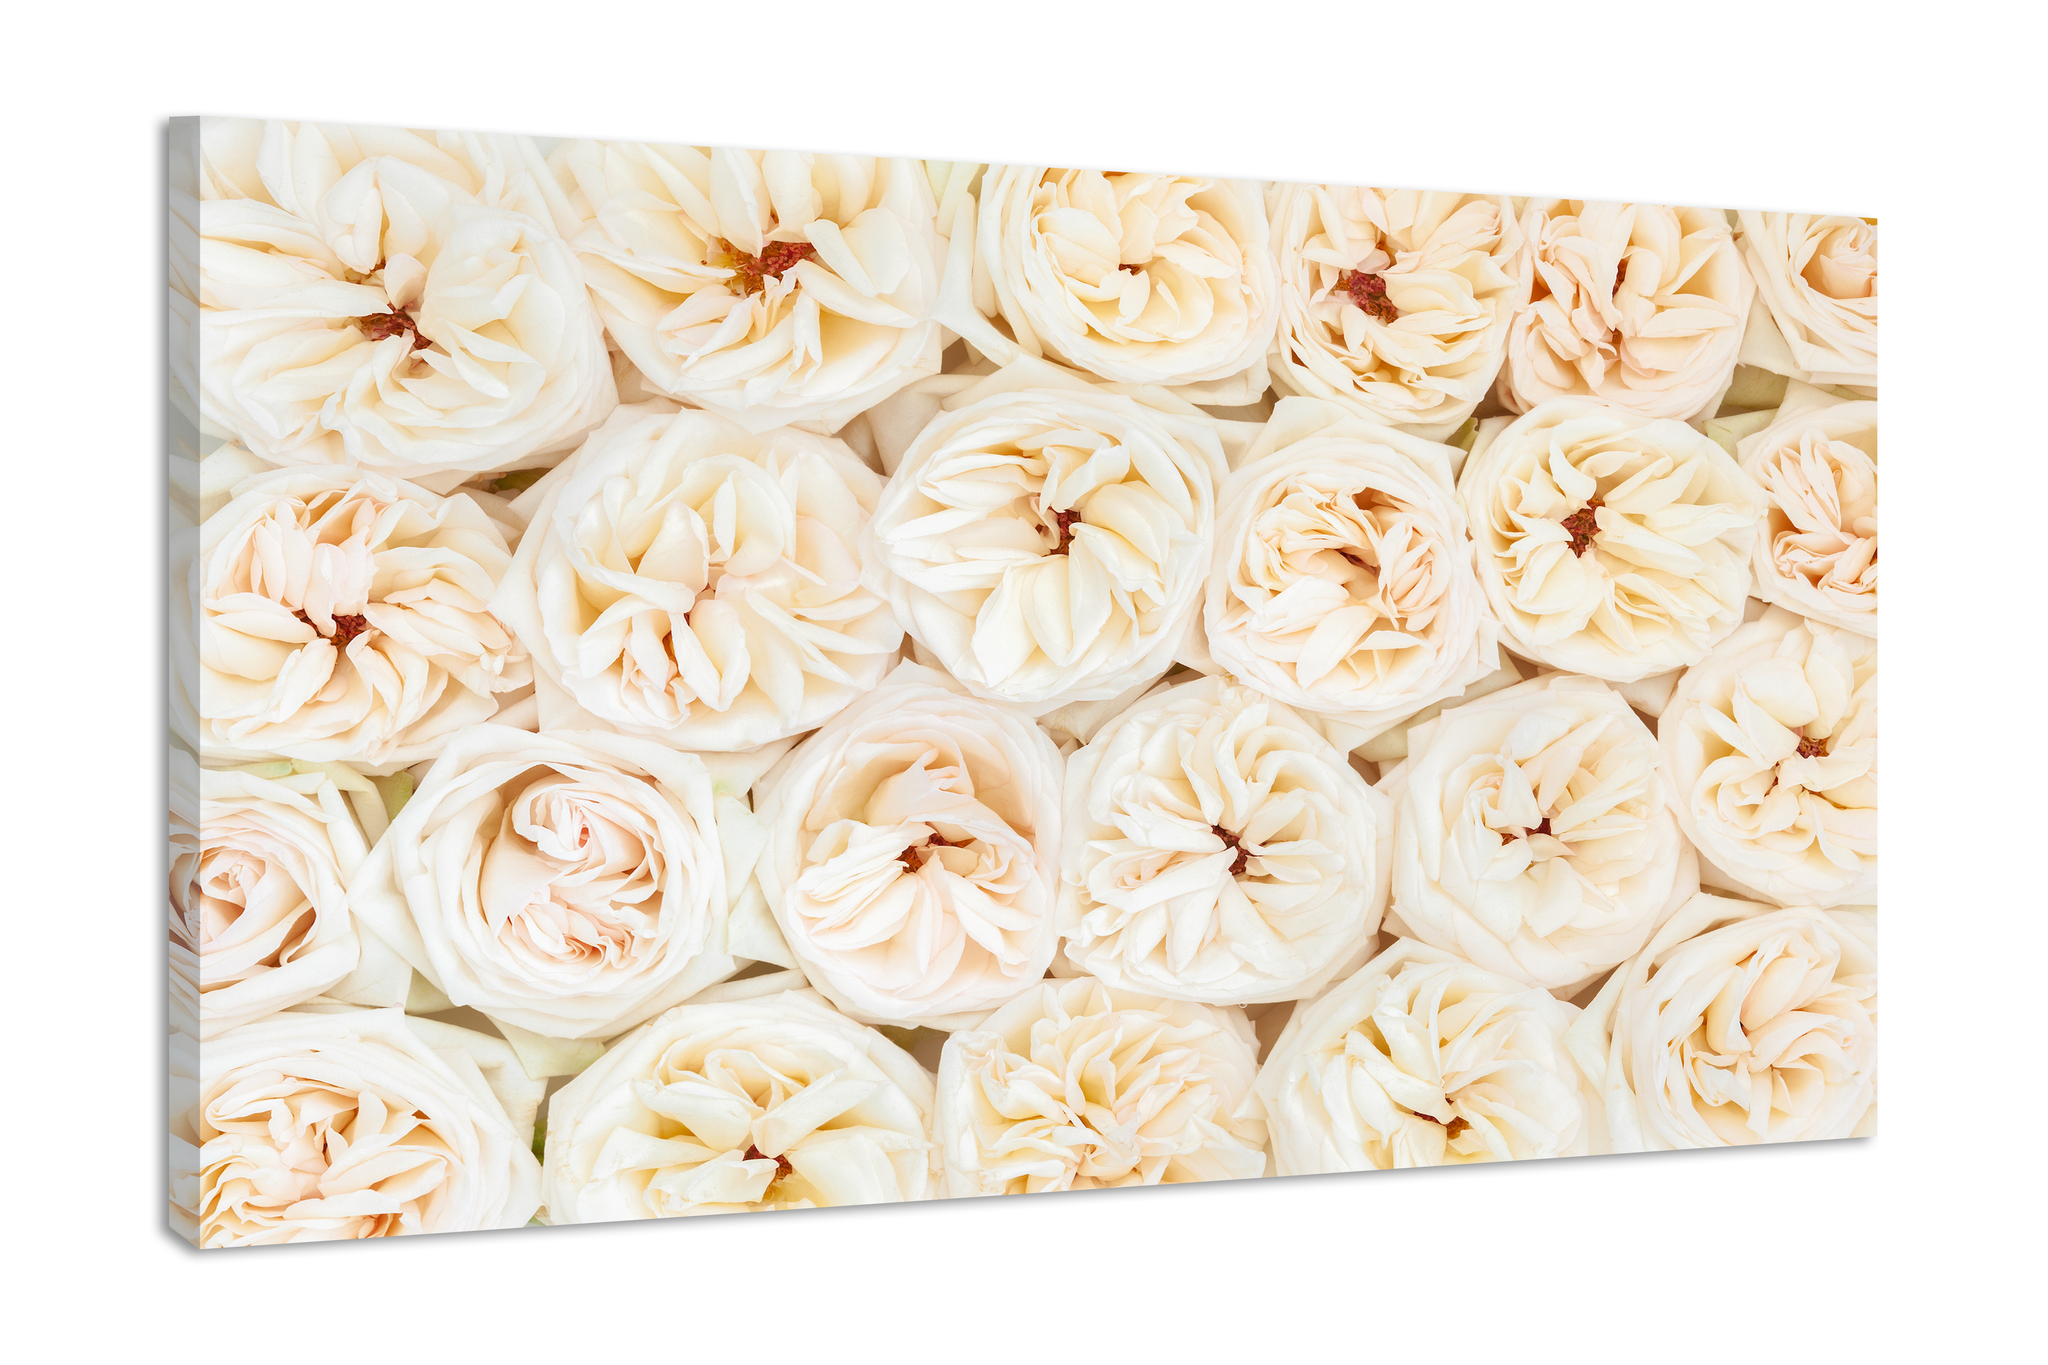 Schilderij -Mooie verse rose en witte rozen, 100x70cm. Premium print